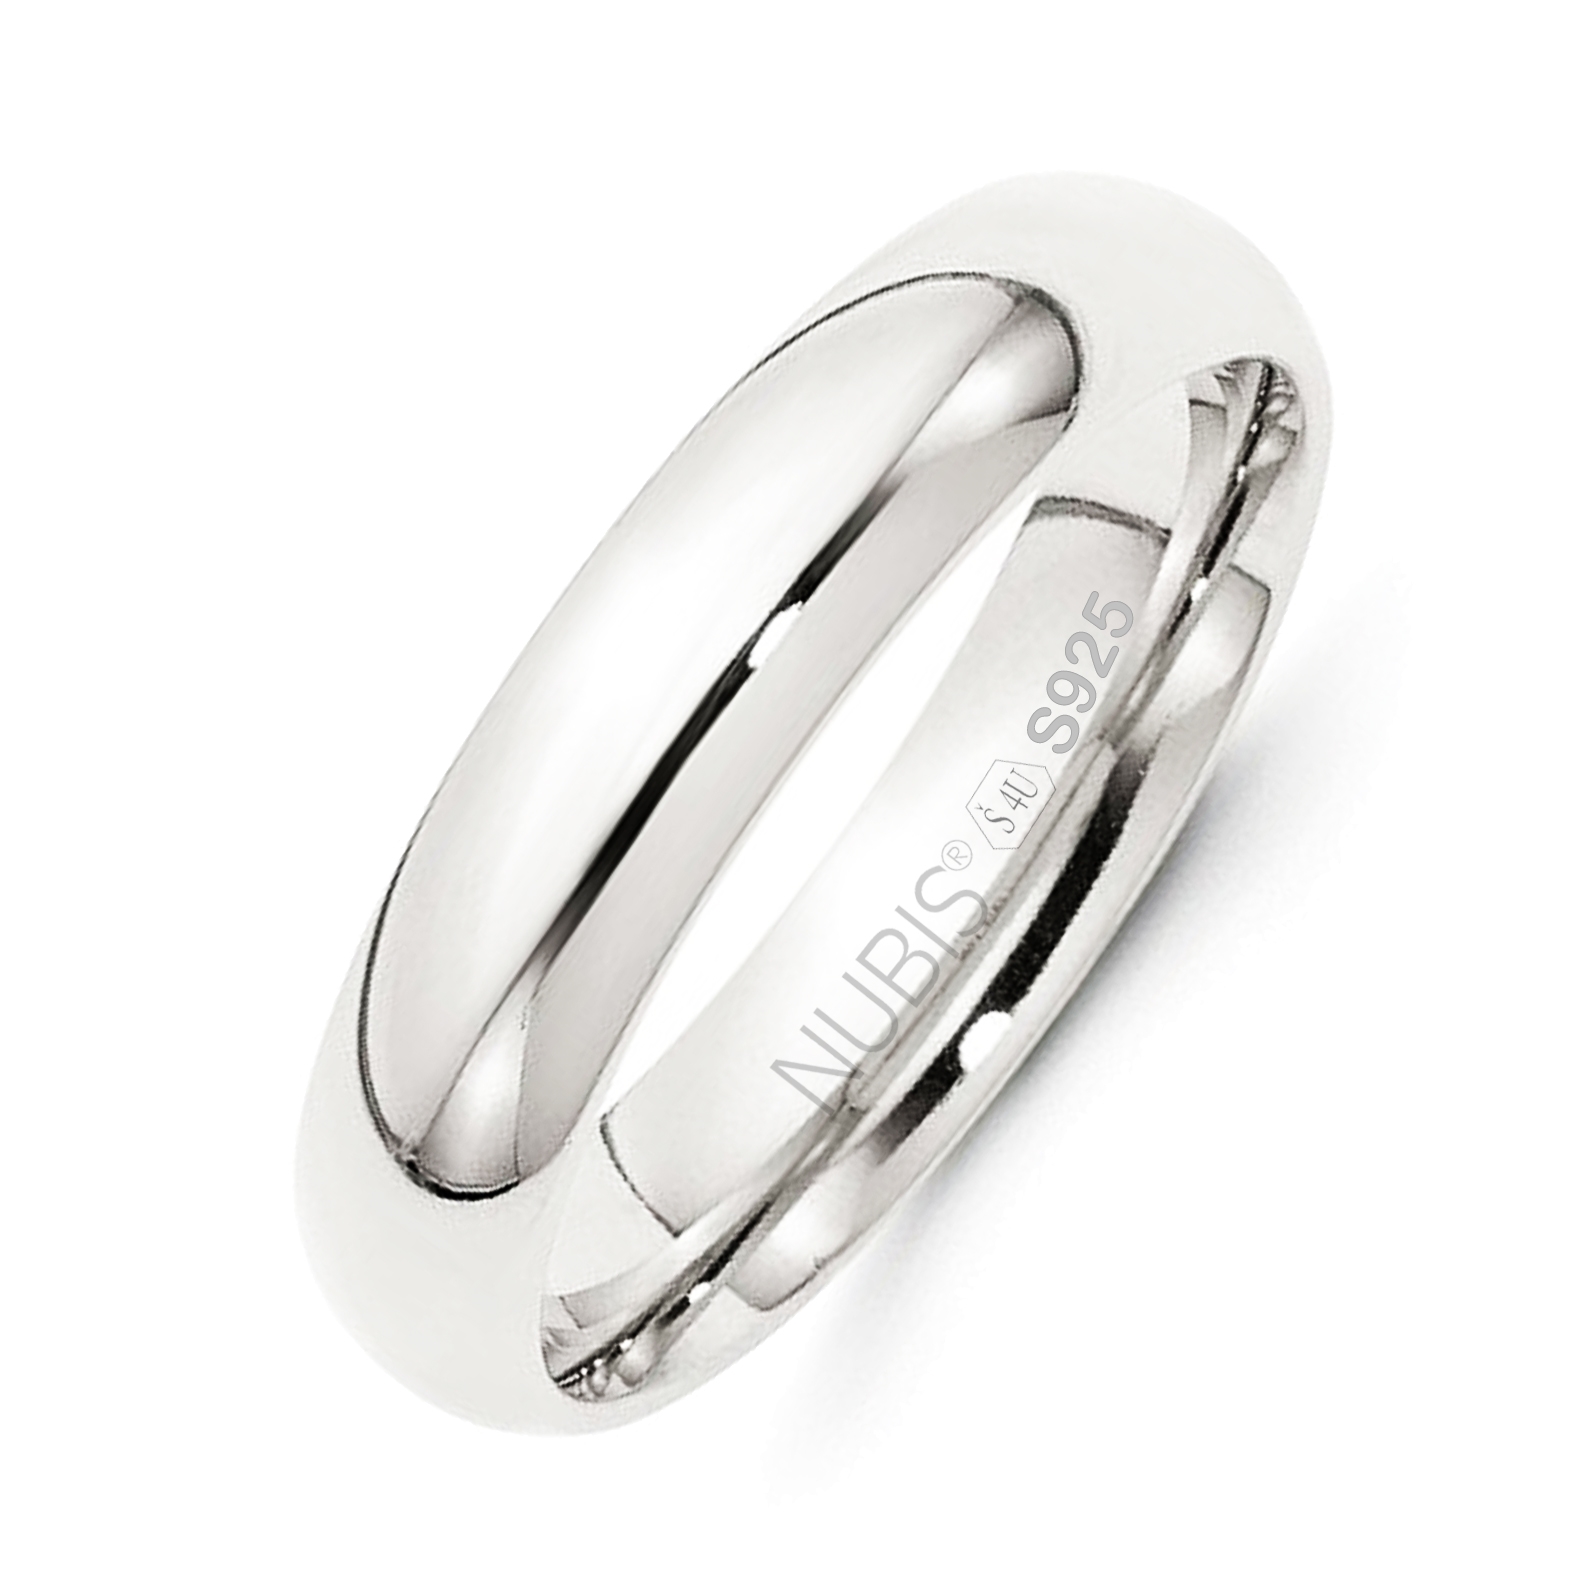 NUBIS® NB101-5 Stříbrný snubní prsten šíře 5 mm - velikost 53 - NB101-5-53